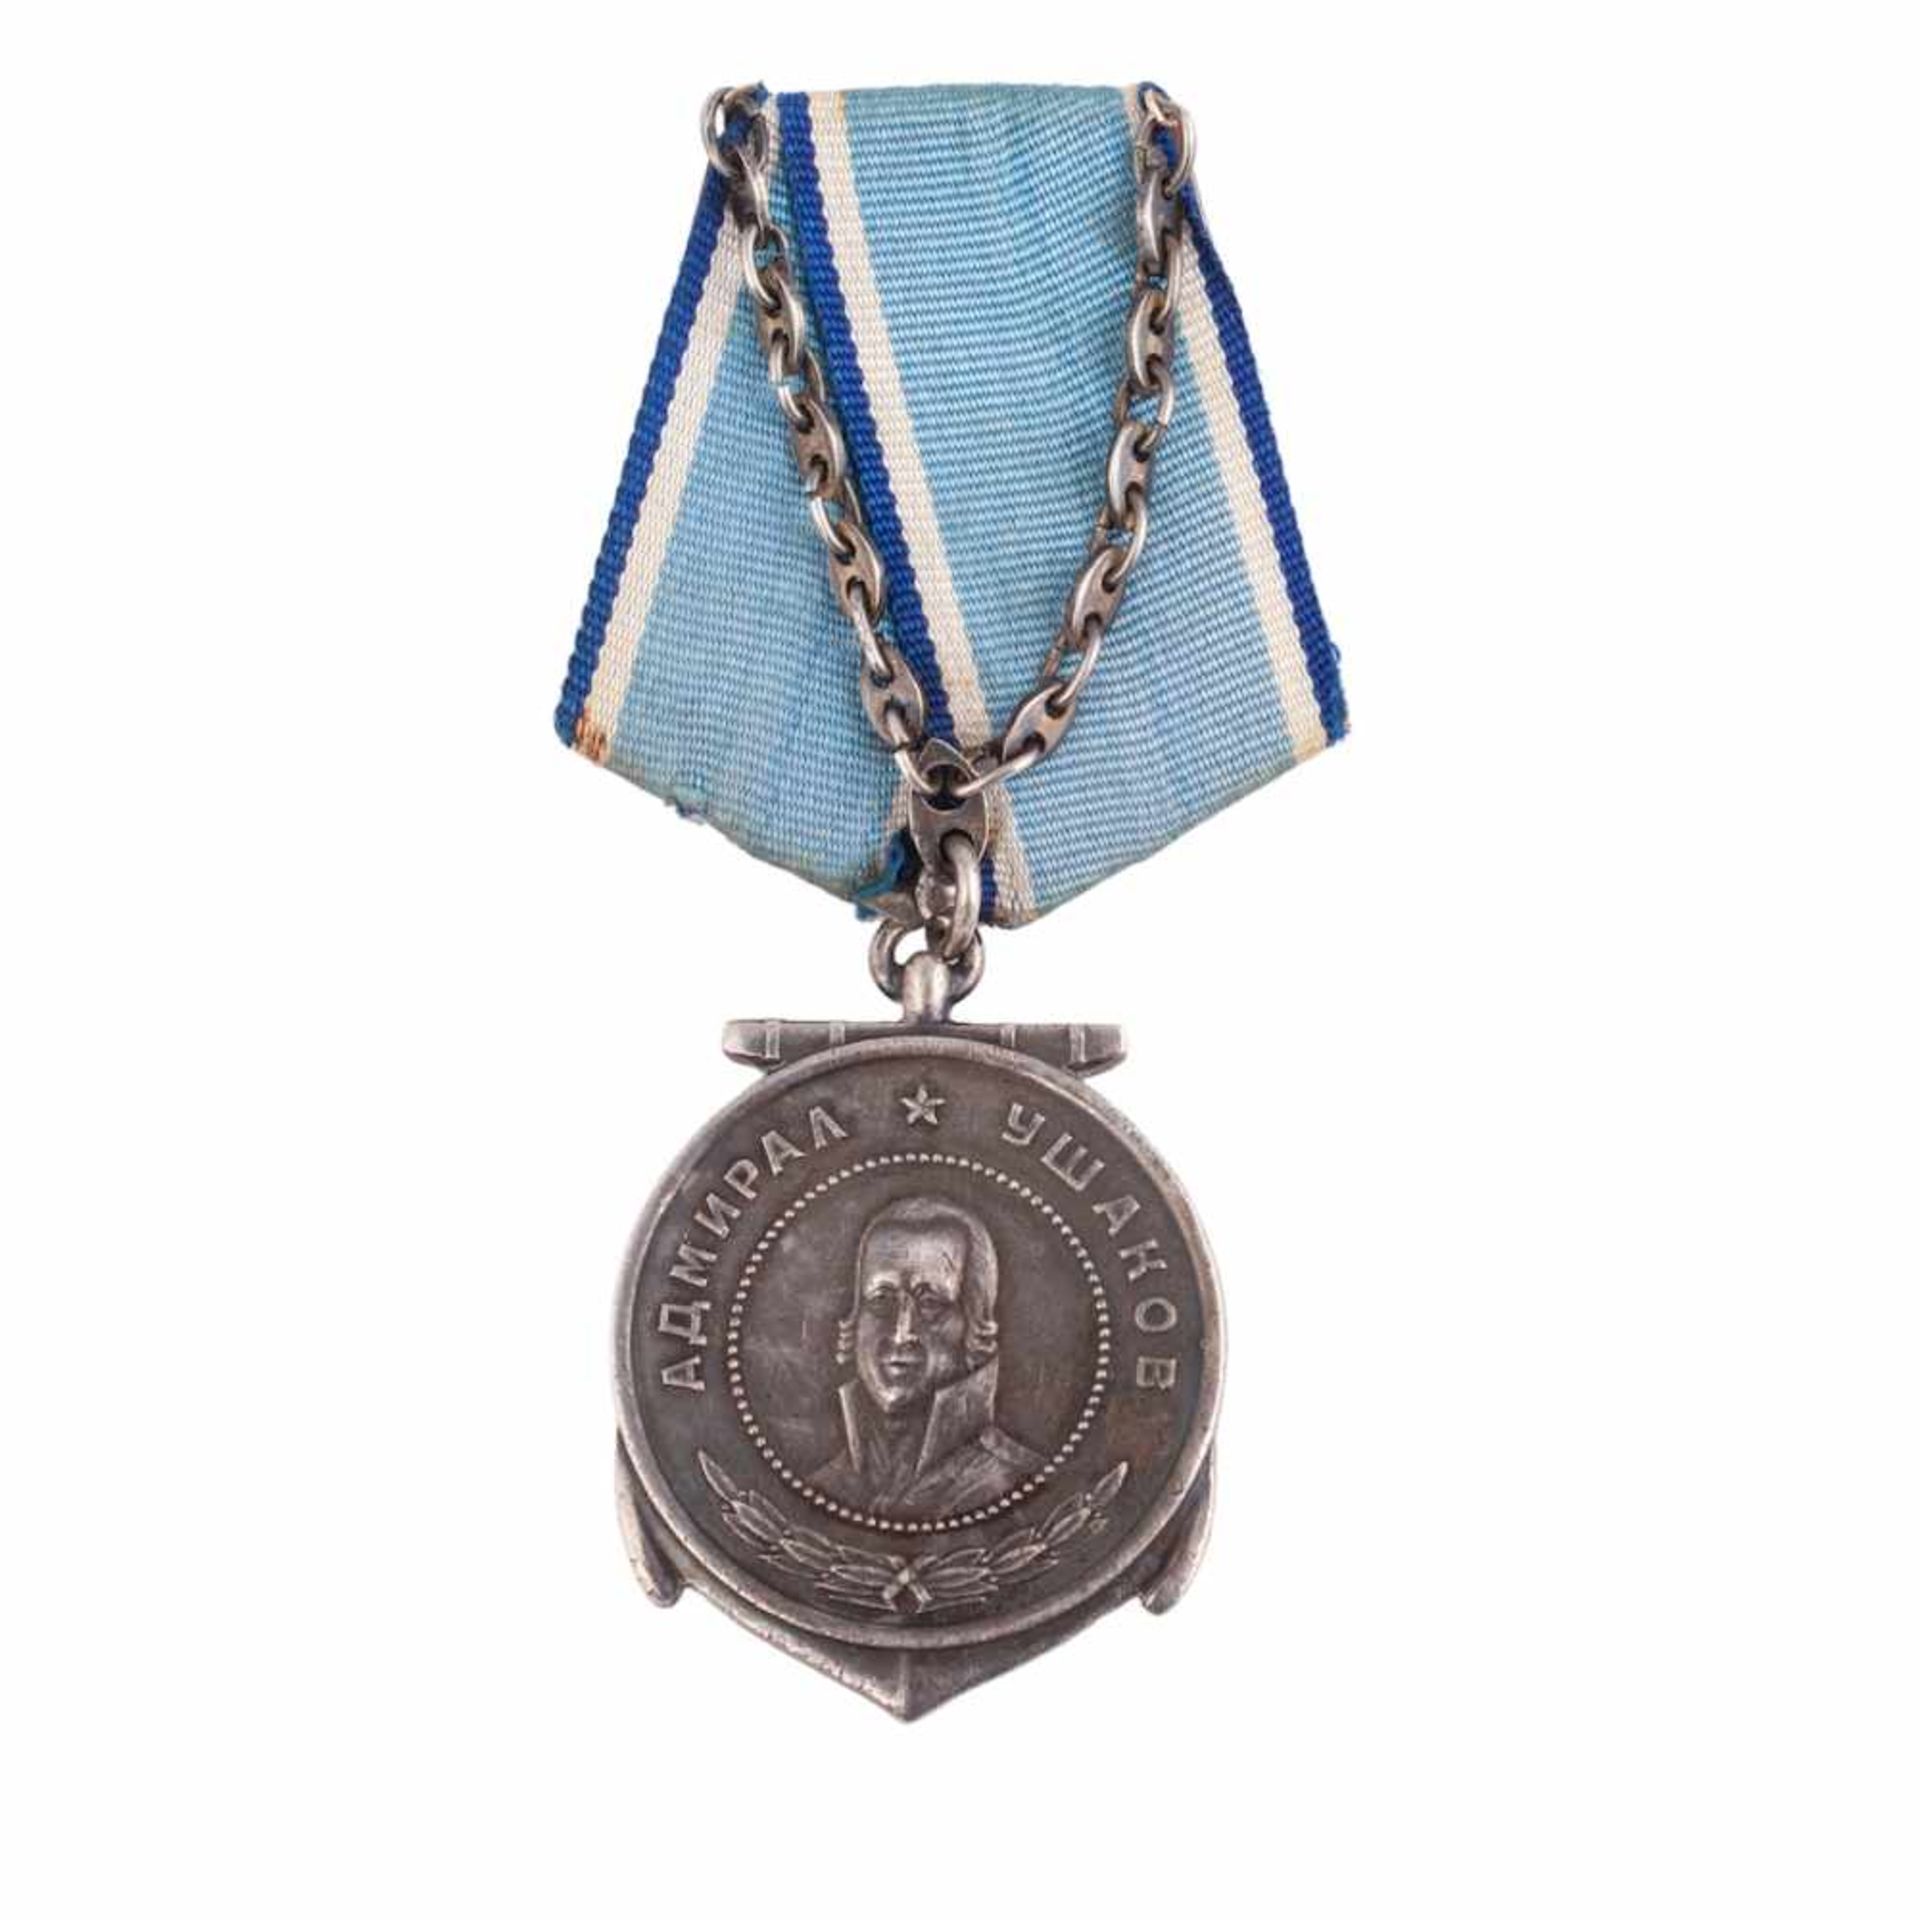 Ushakov medal. Number: 2879